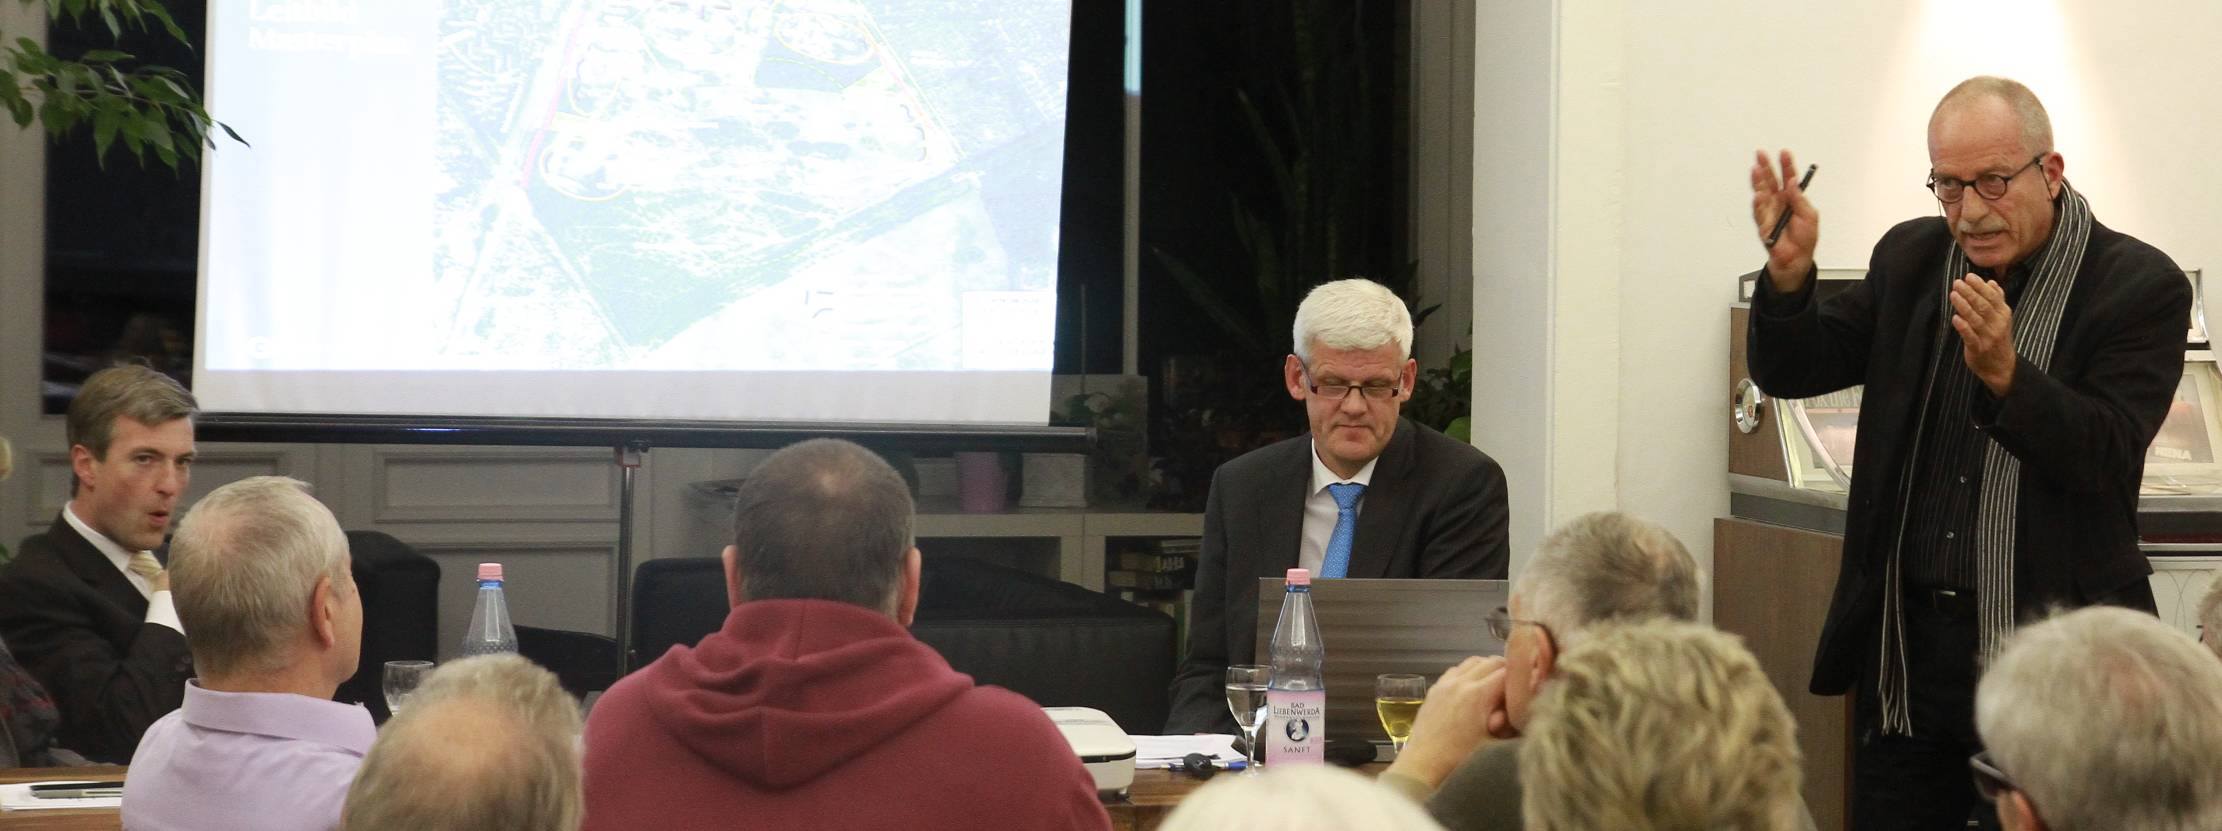 Prof. Machleidt stellt den städtebaulichen Entwurf für die Parks-Range vor 